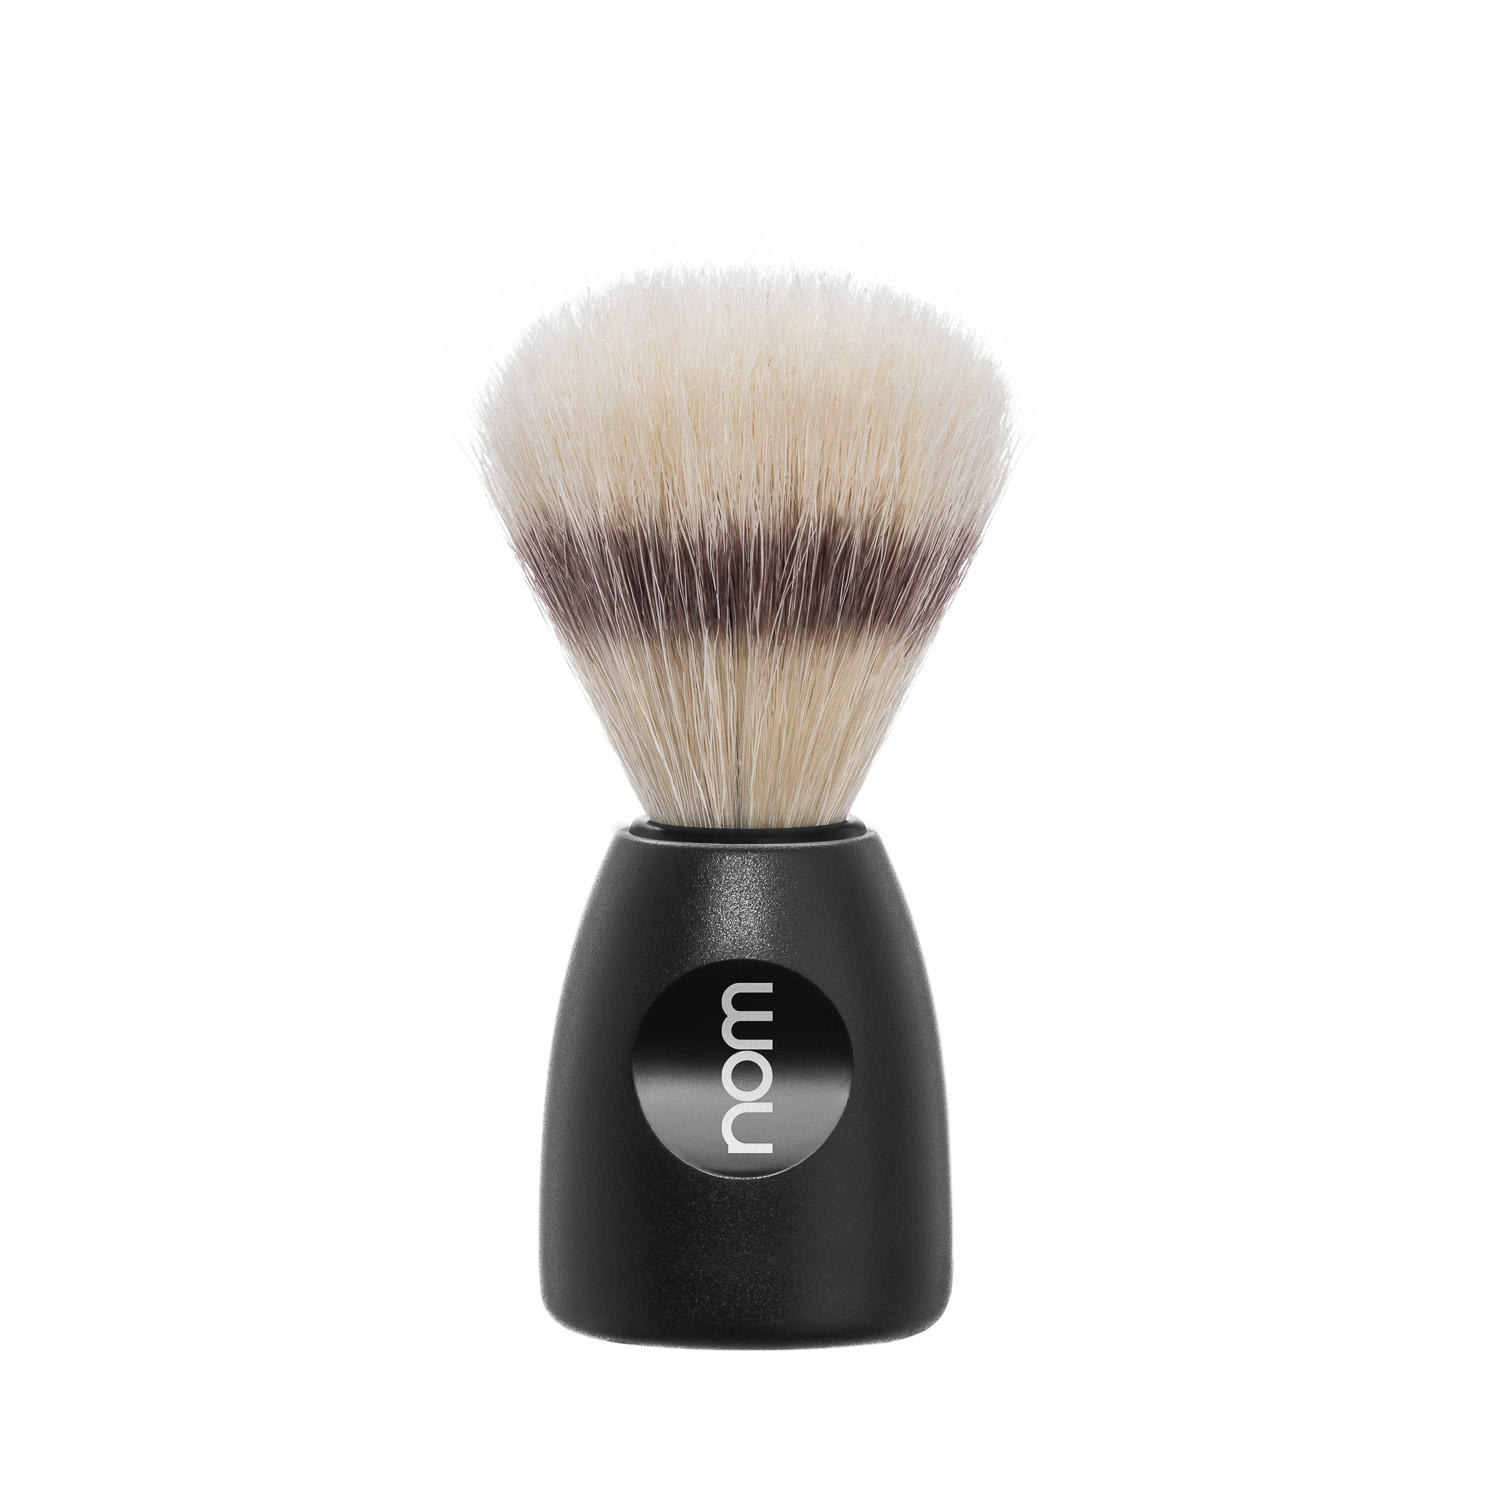 LASSE41BL NOM, LASSE in Black, Natural Bristle Shaving Brush